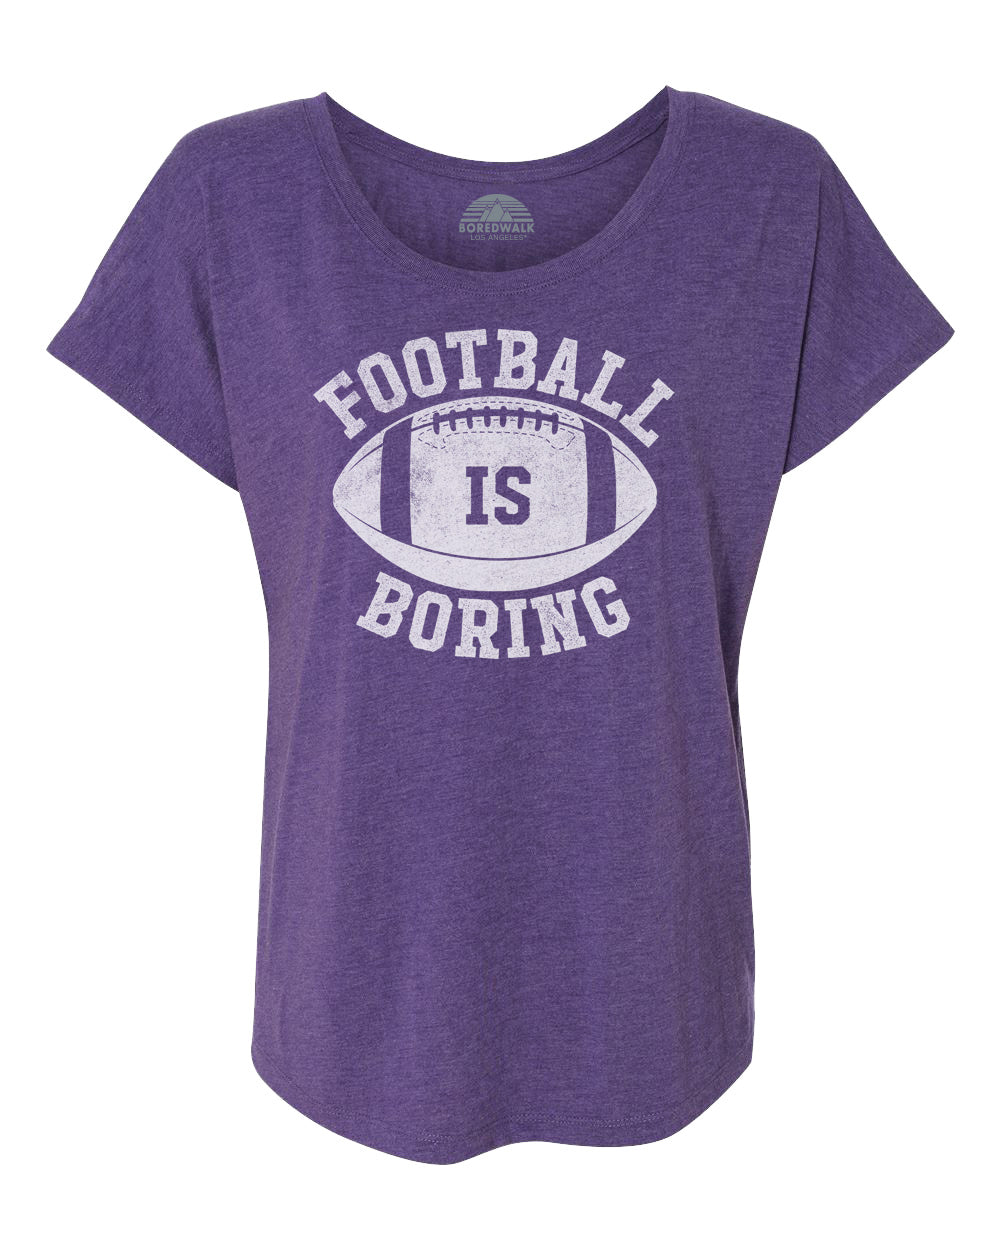 Women's Football is Boring Scoop Neck T-Shirt